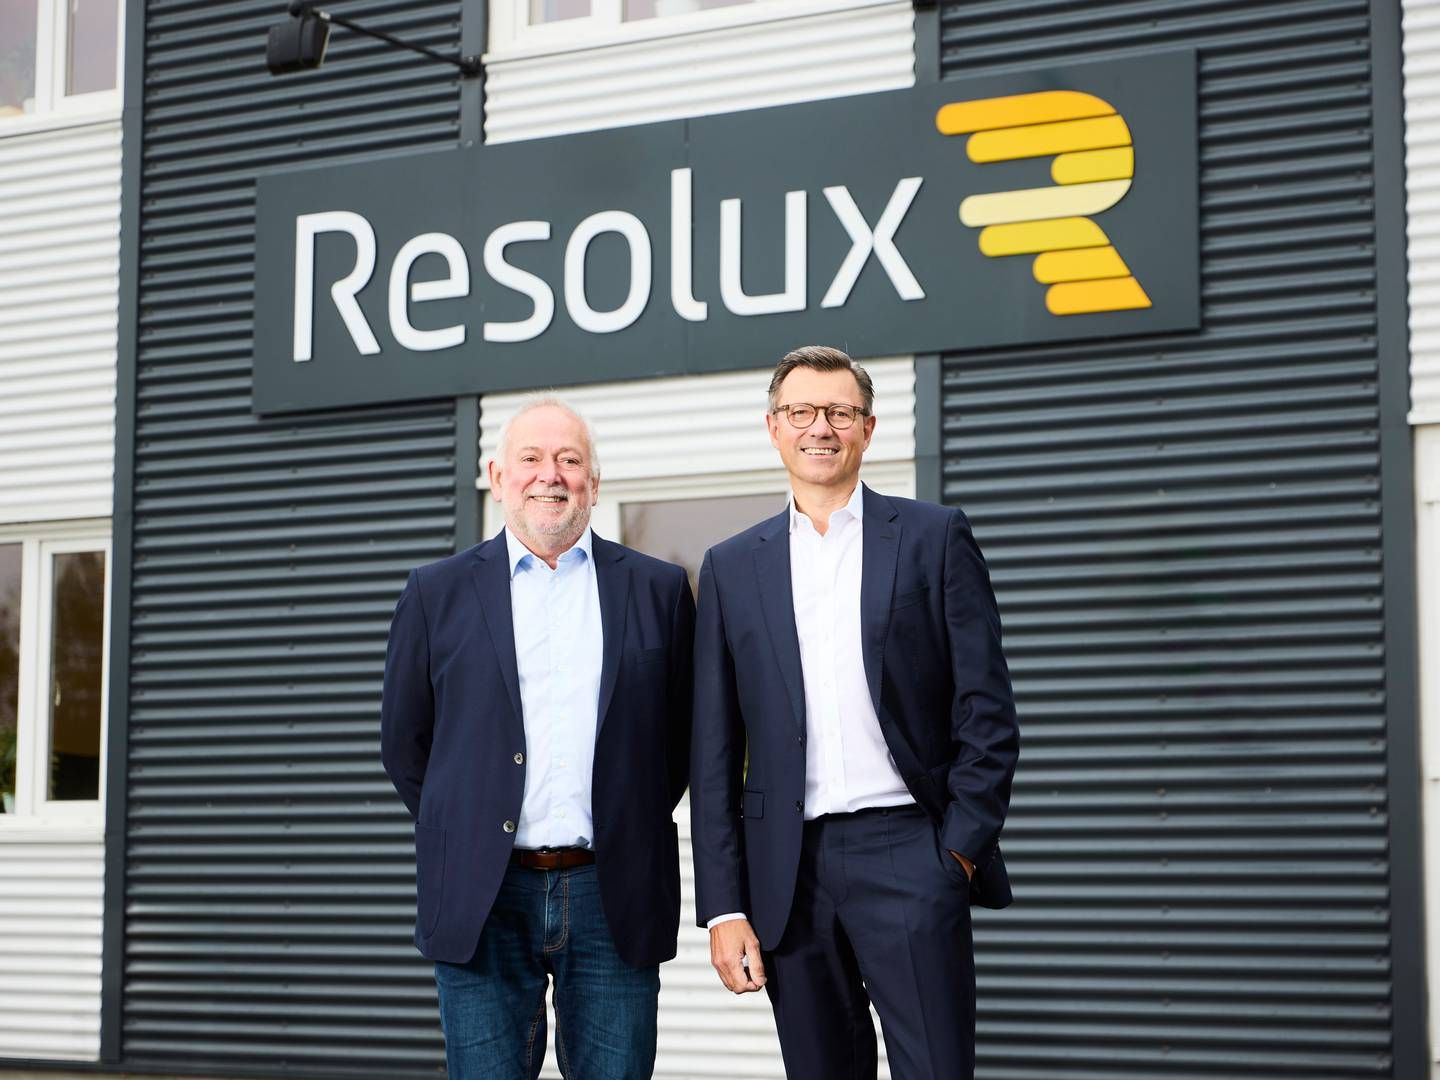 ”Jeg ser et stort potentiale for Resolux’ ydelser, selvom vindmøllebranchen aktuelt er presset," lyder det fra den nye direktør. | Foto: Pr Resolux